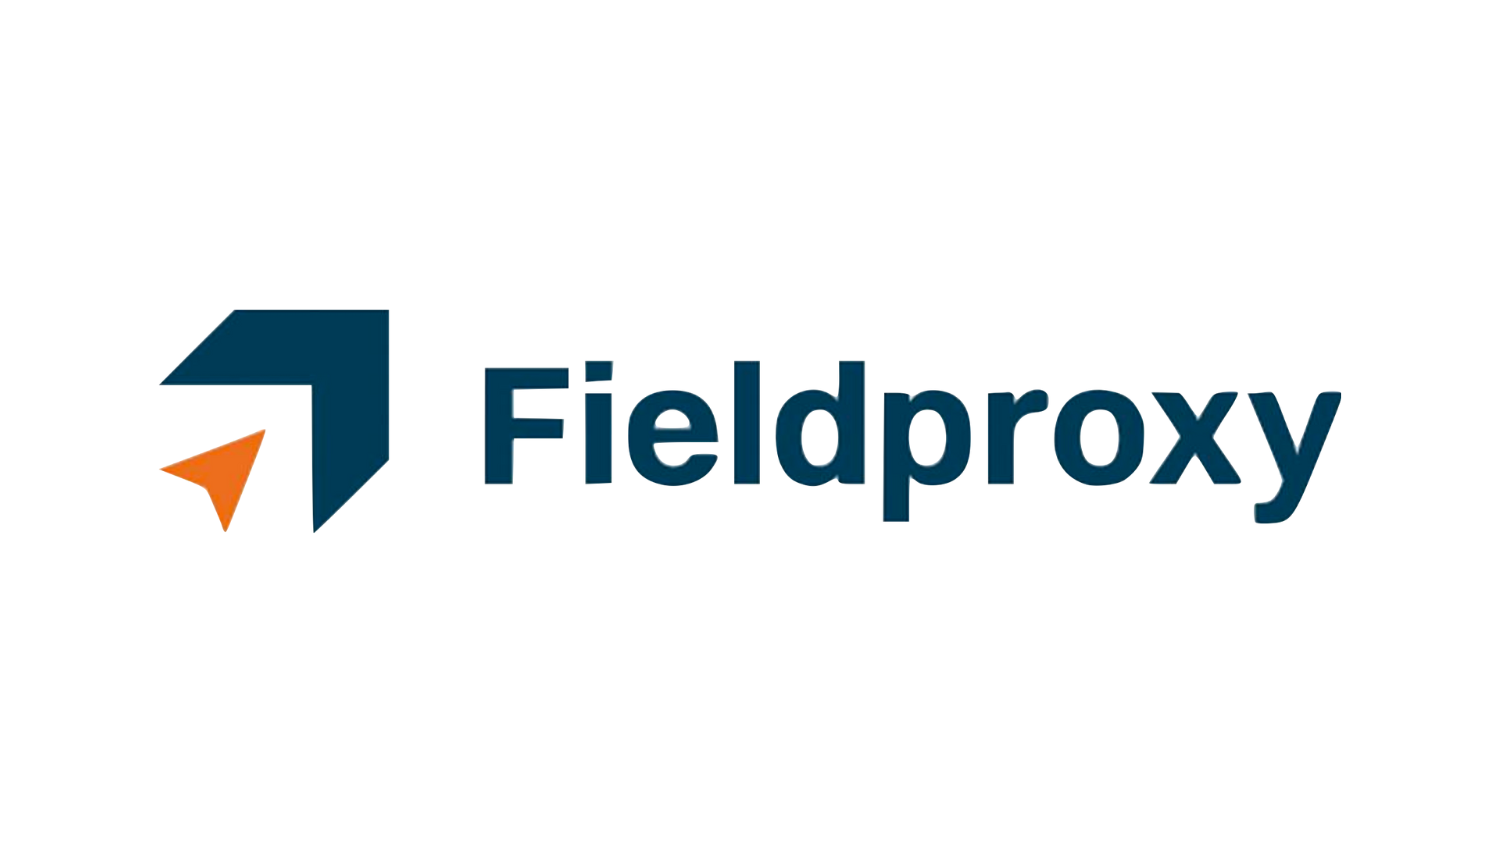 Fieldproxy